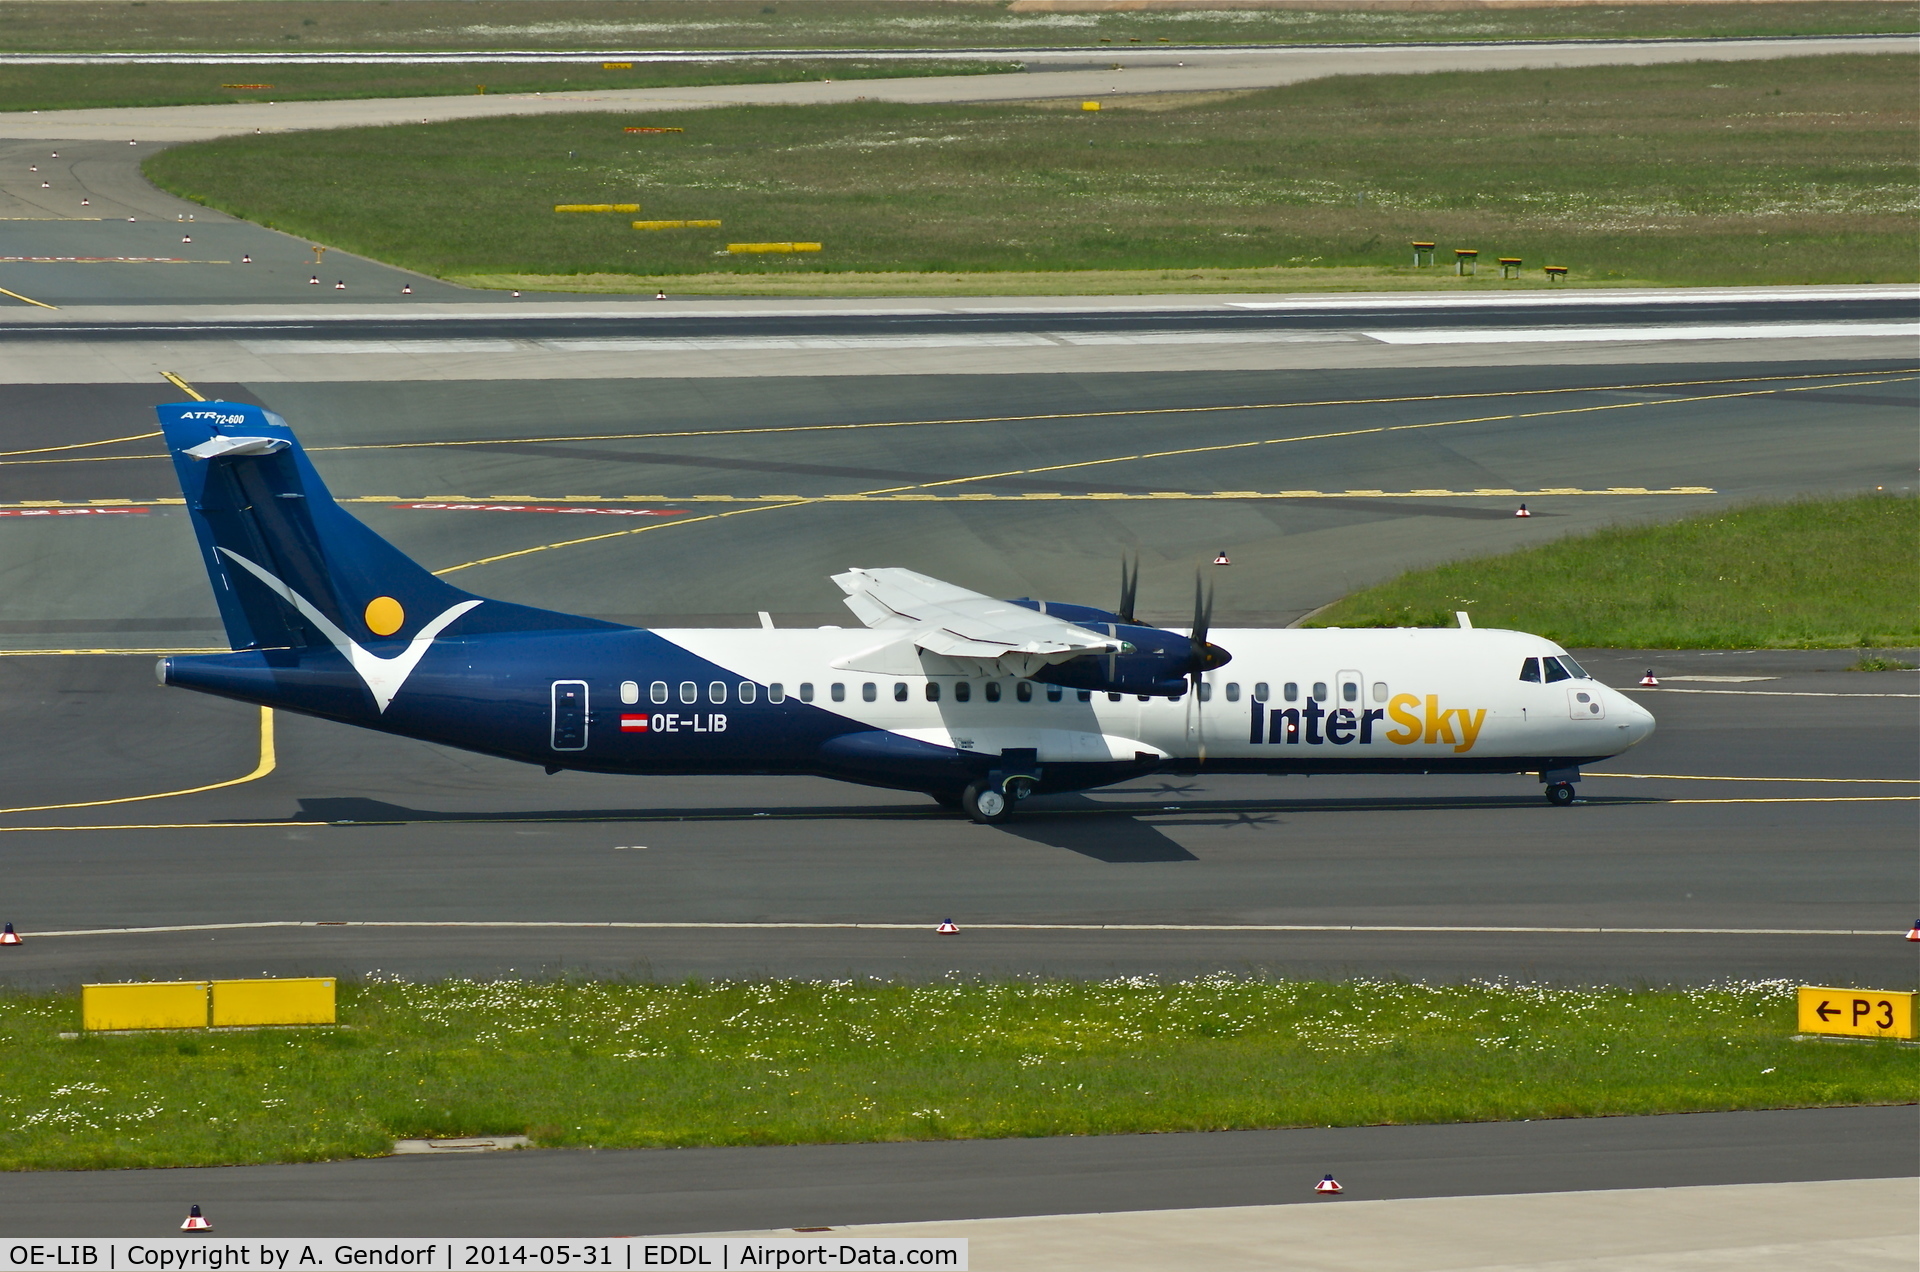 OE-LIB, 2012 ATR N700SV C/N 1038, Intersky, is here on taxiway 